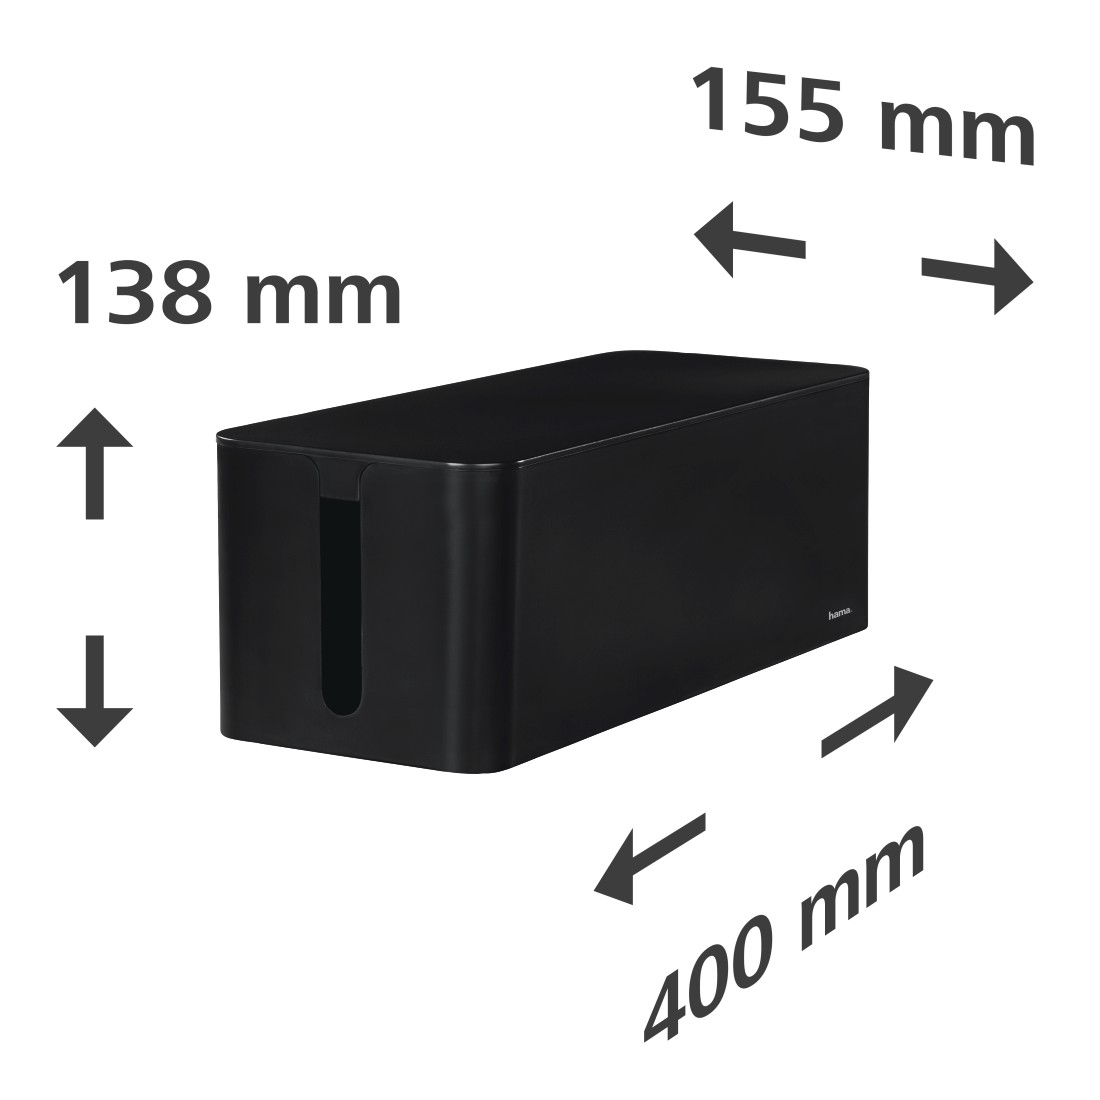 Hama Maxi cable box black 15.6 x 40 x 13 cm W x D x H with rubber feet 